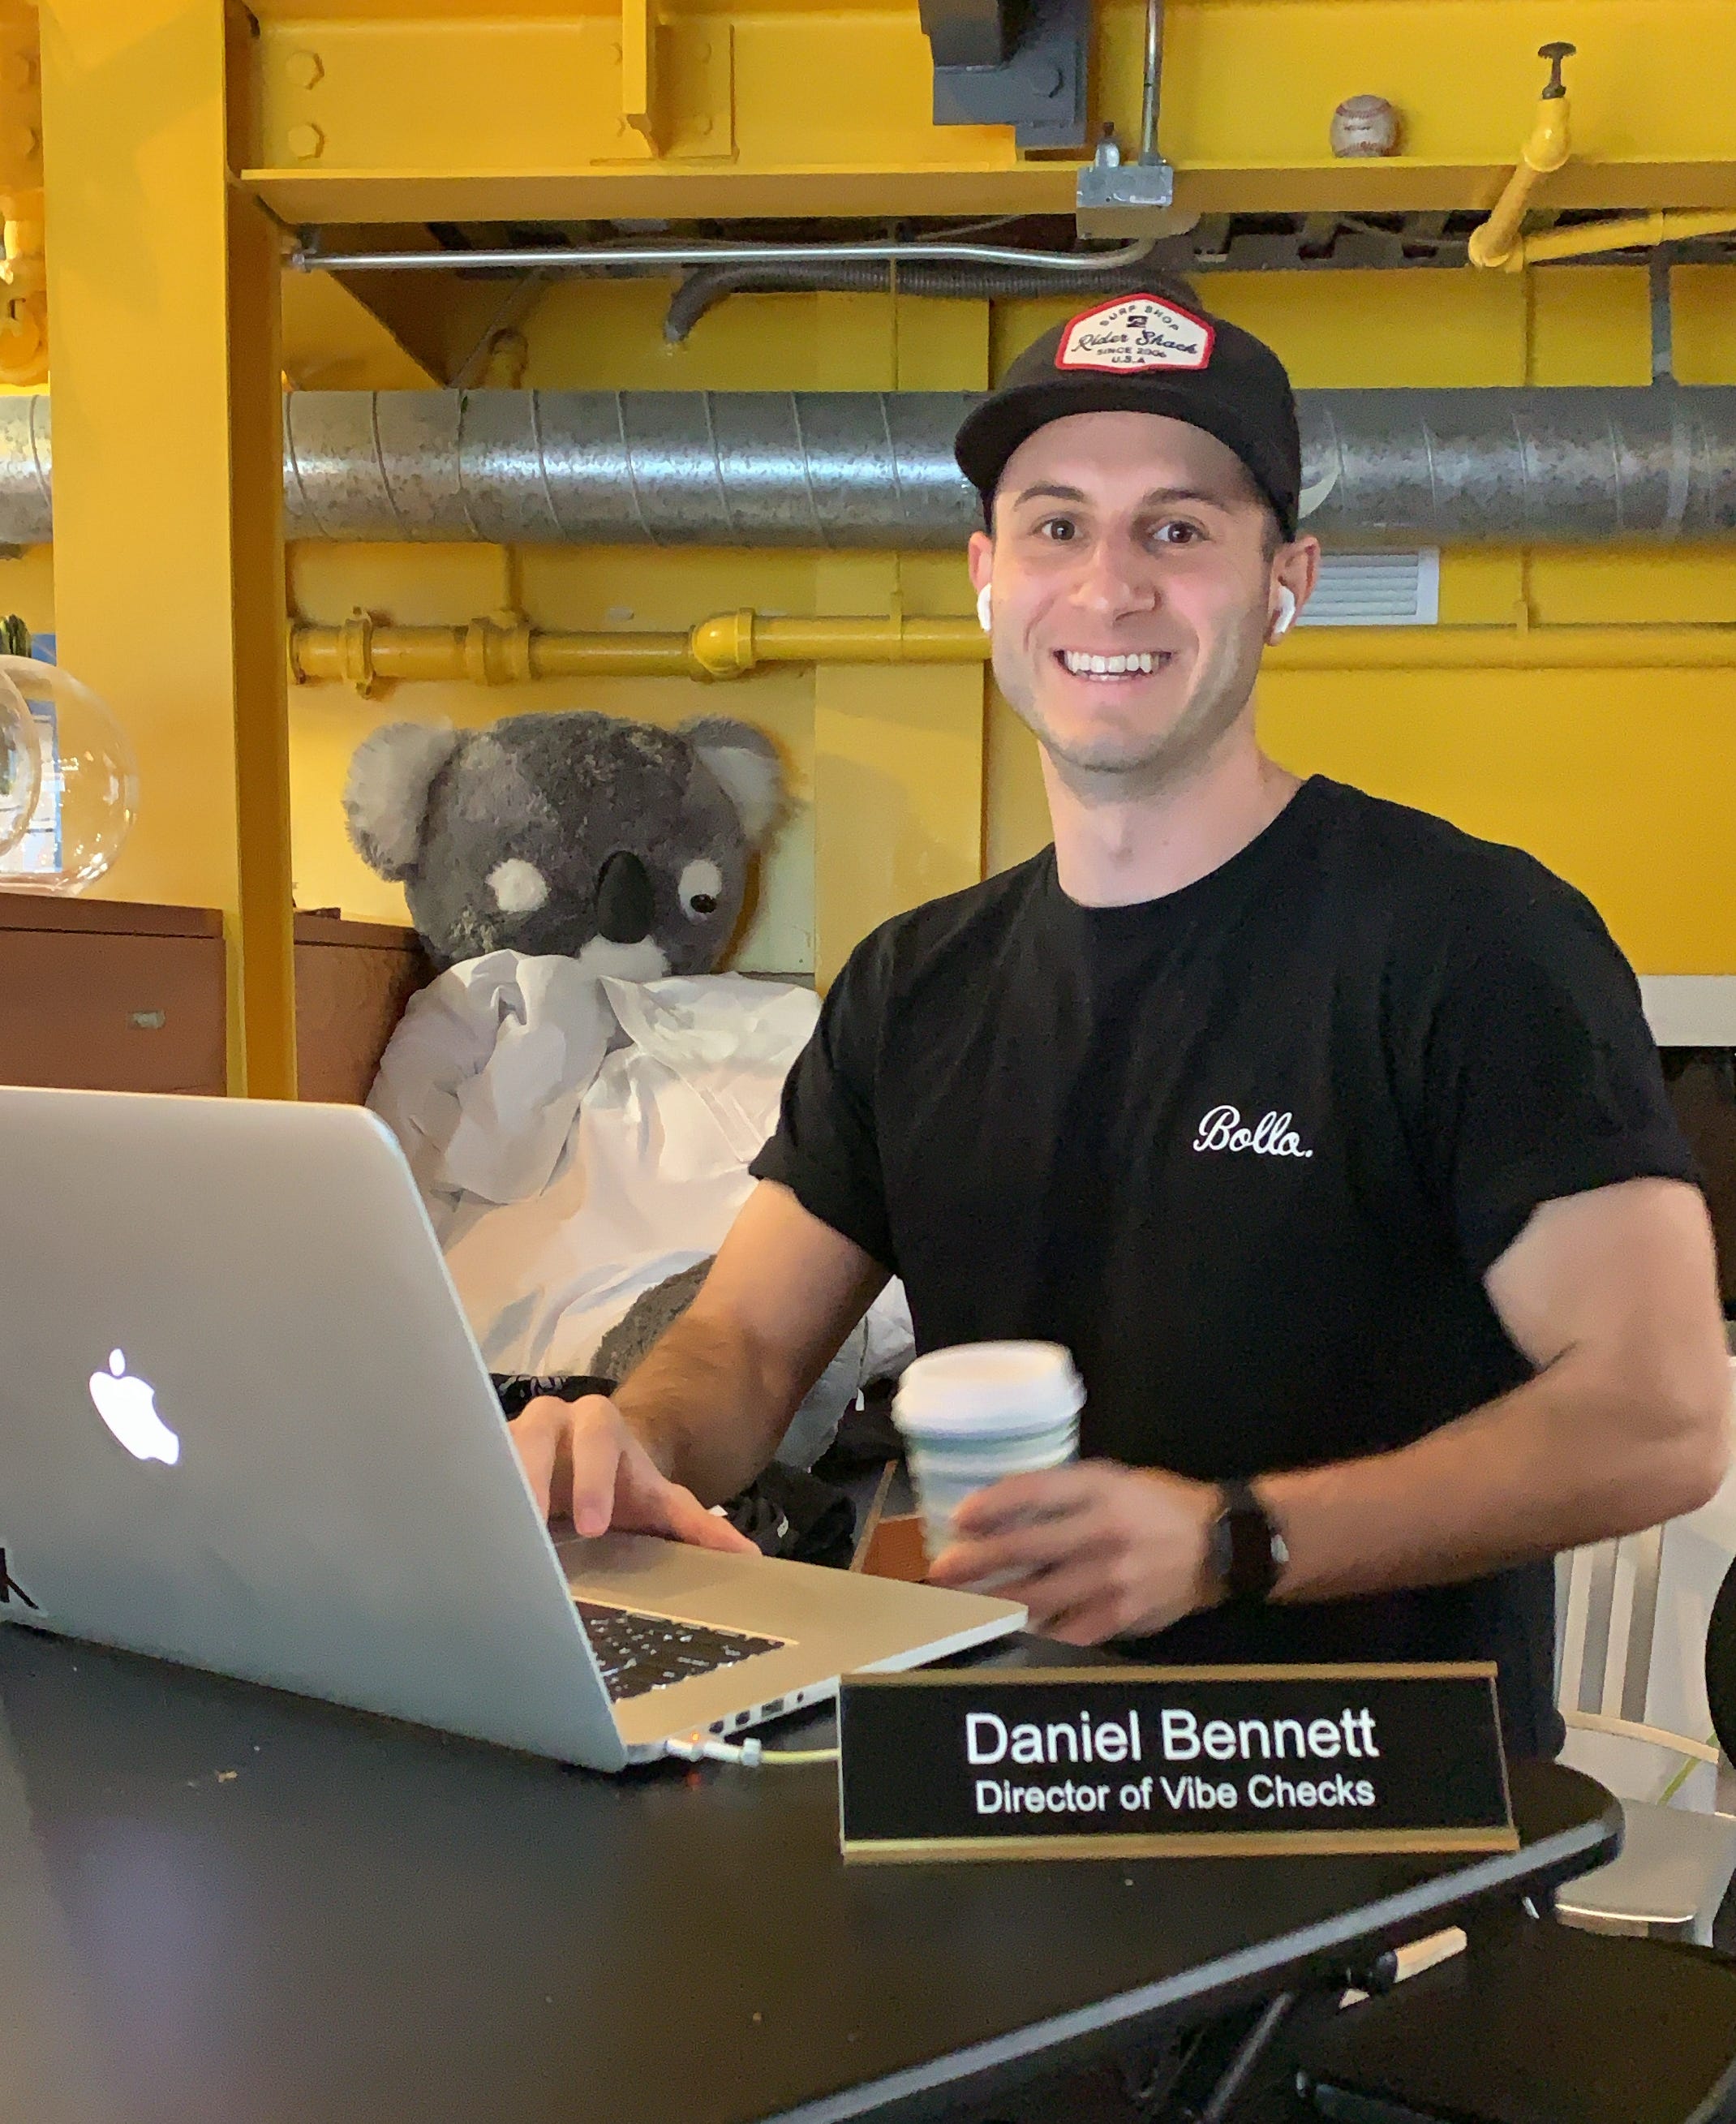 Daniel Bennett lächelt in die Kamera.  Vor ihm hängt ein Namensschild mit der Aufschrift „Daniel Bennett, Director of Vibe Checks“.